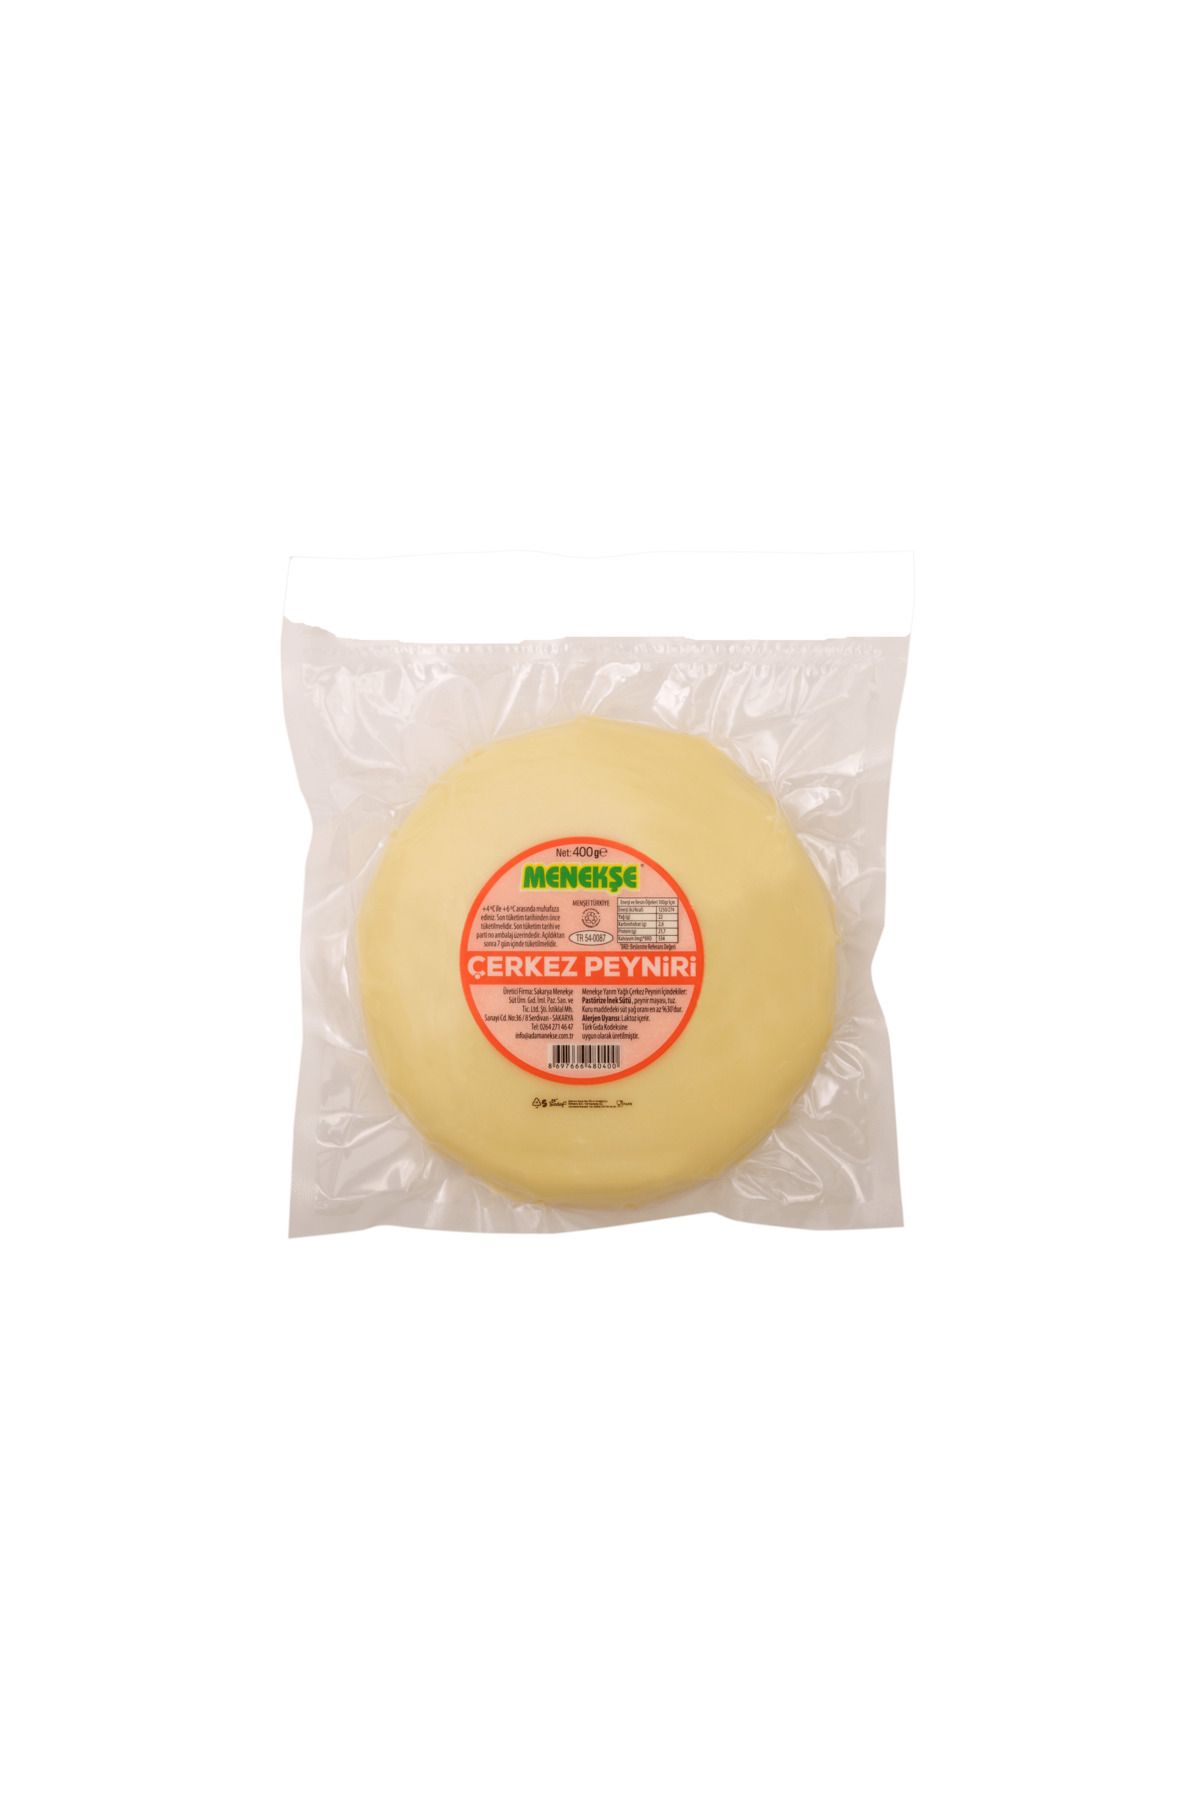 Menekşe Yarım Yağlı Çerkez Peyniri(400 gr.)